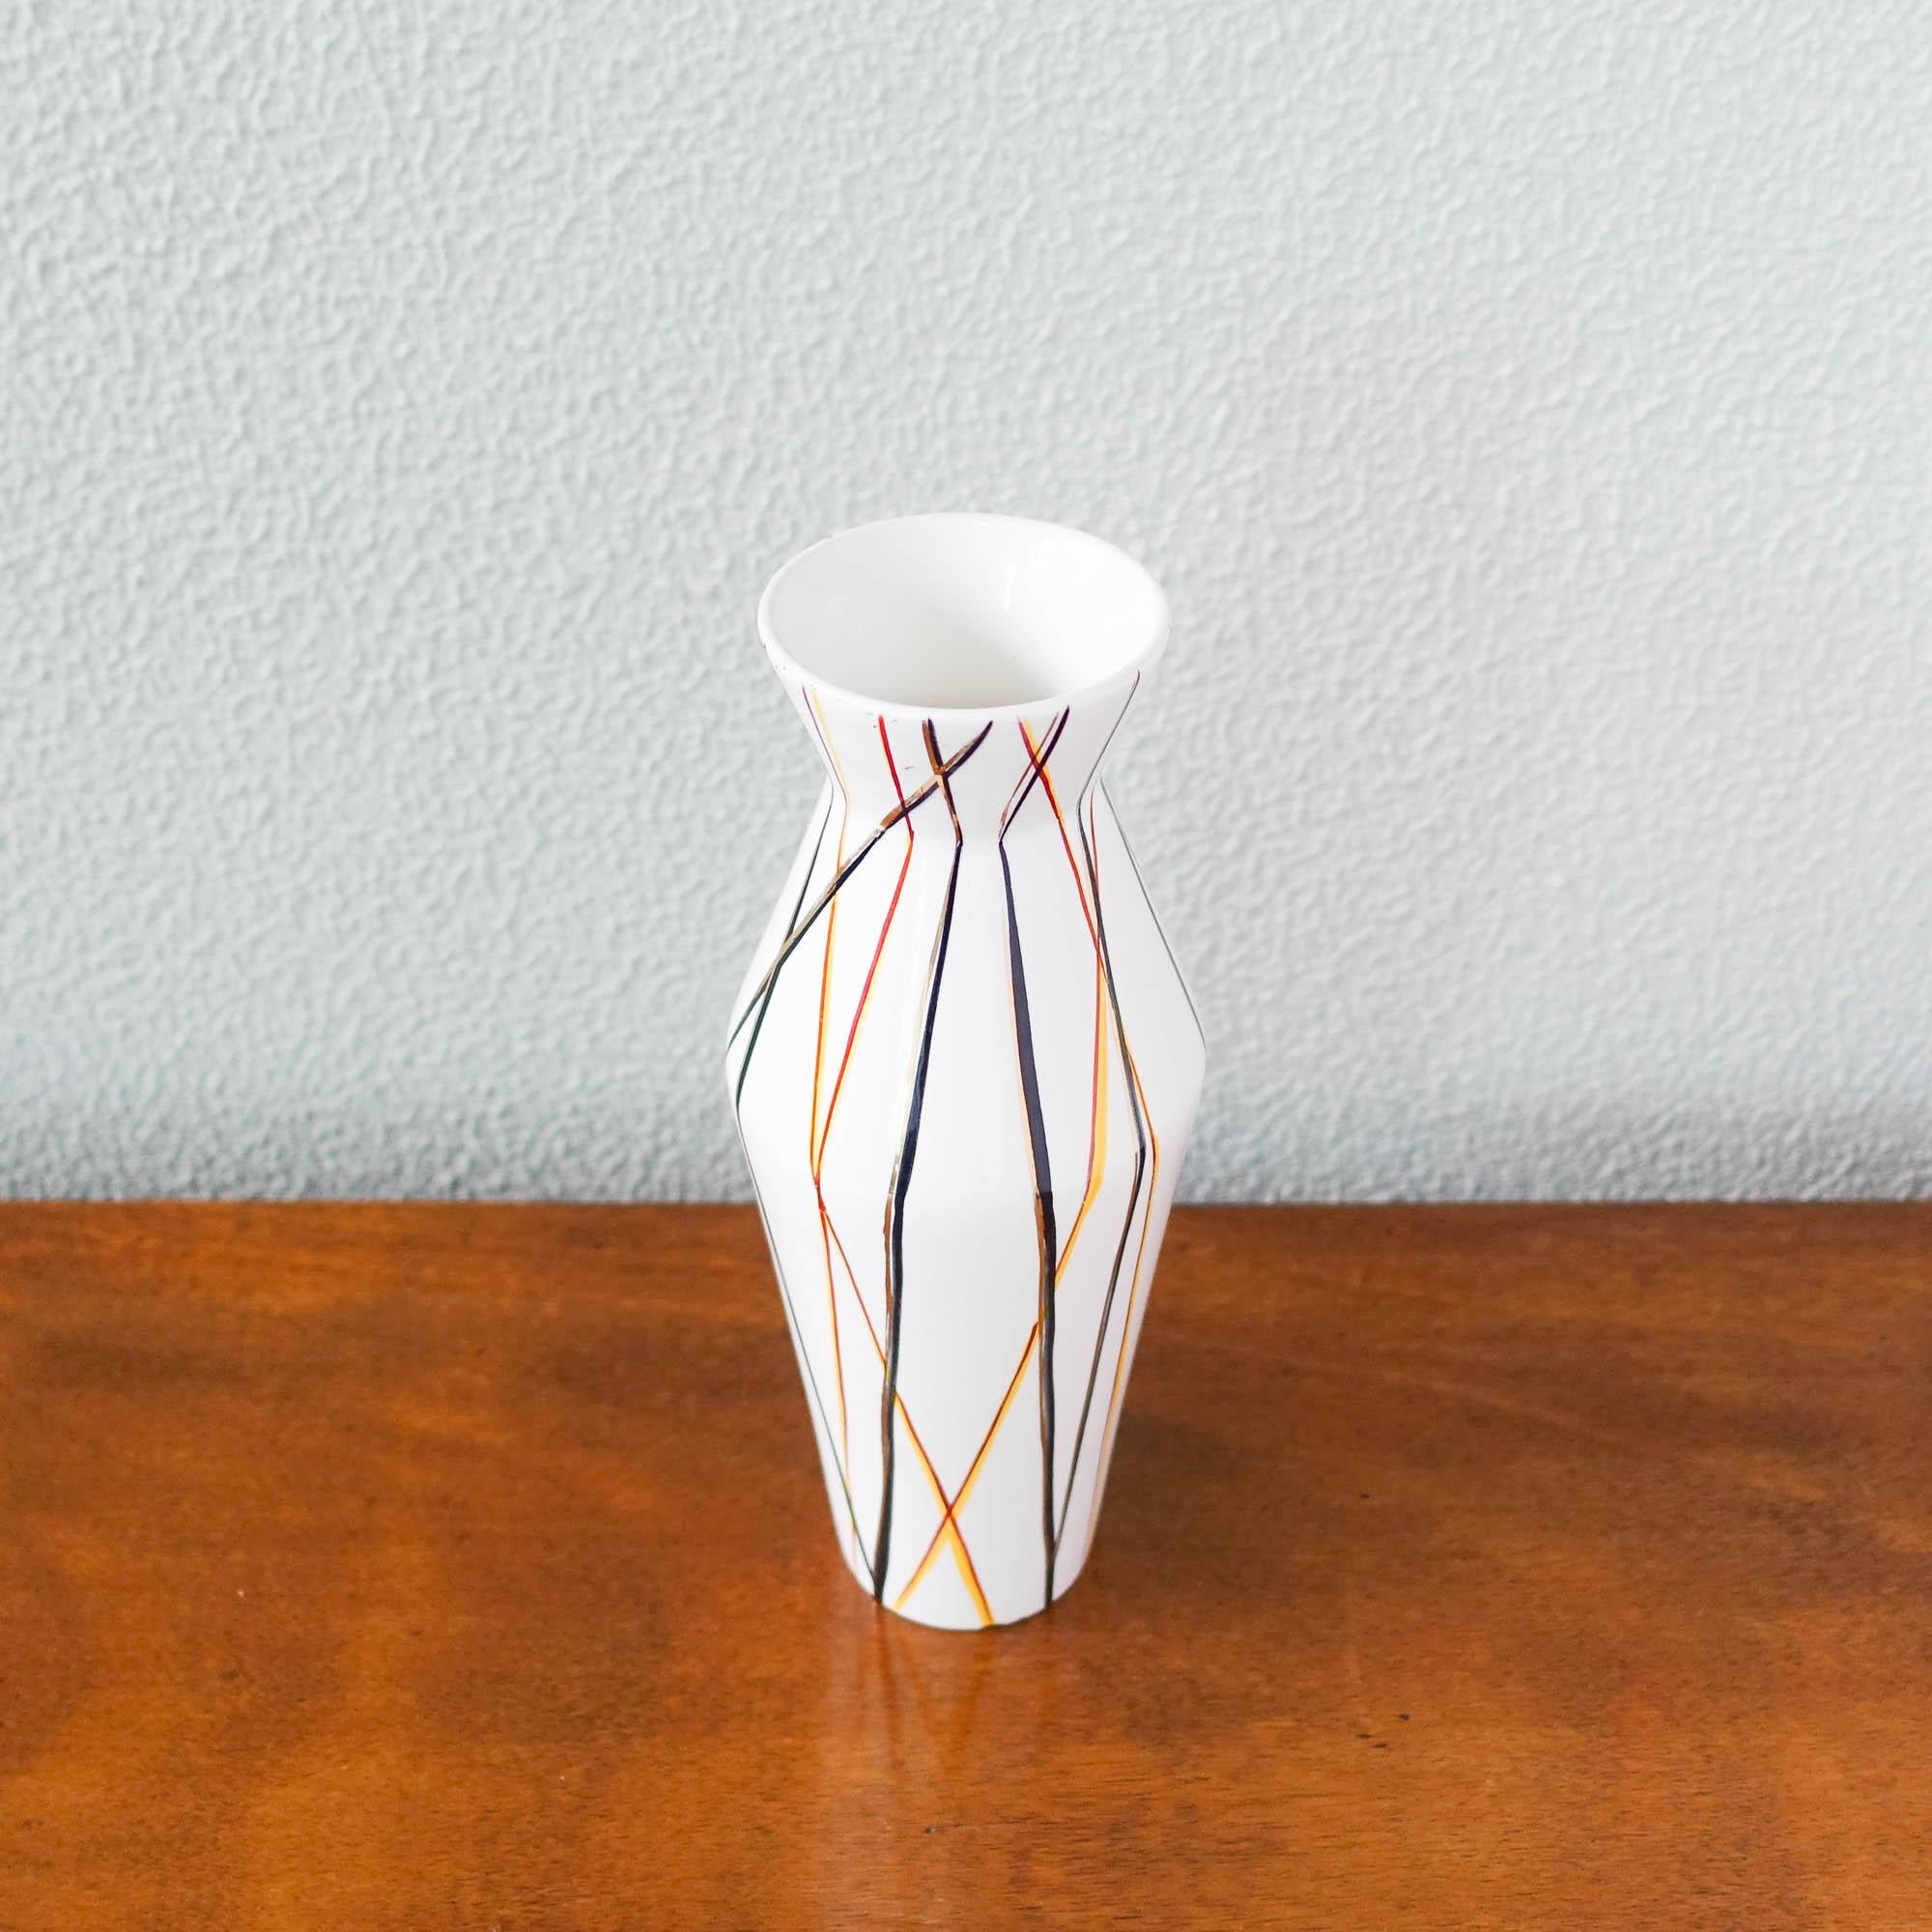 Mid-Century Modern Modernist Flower Vase in Ceramic, by Vitriv, Portugal, 1950's For Sale